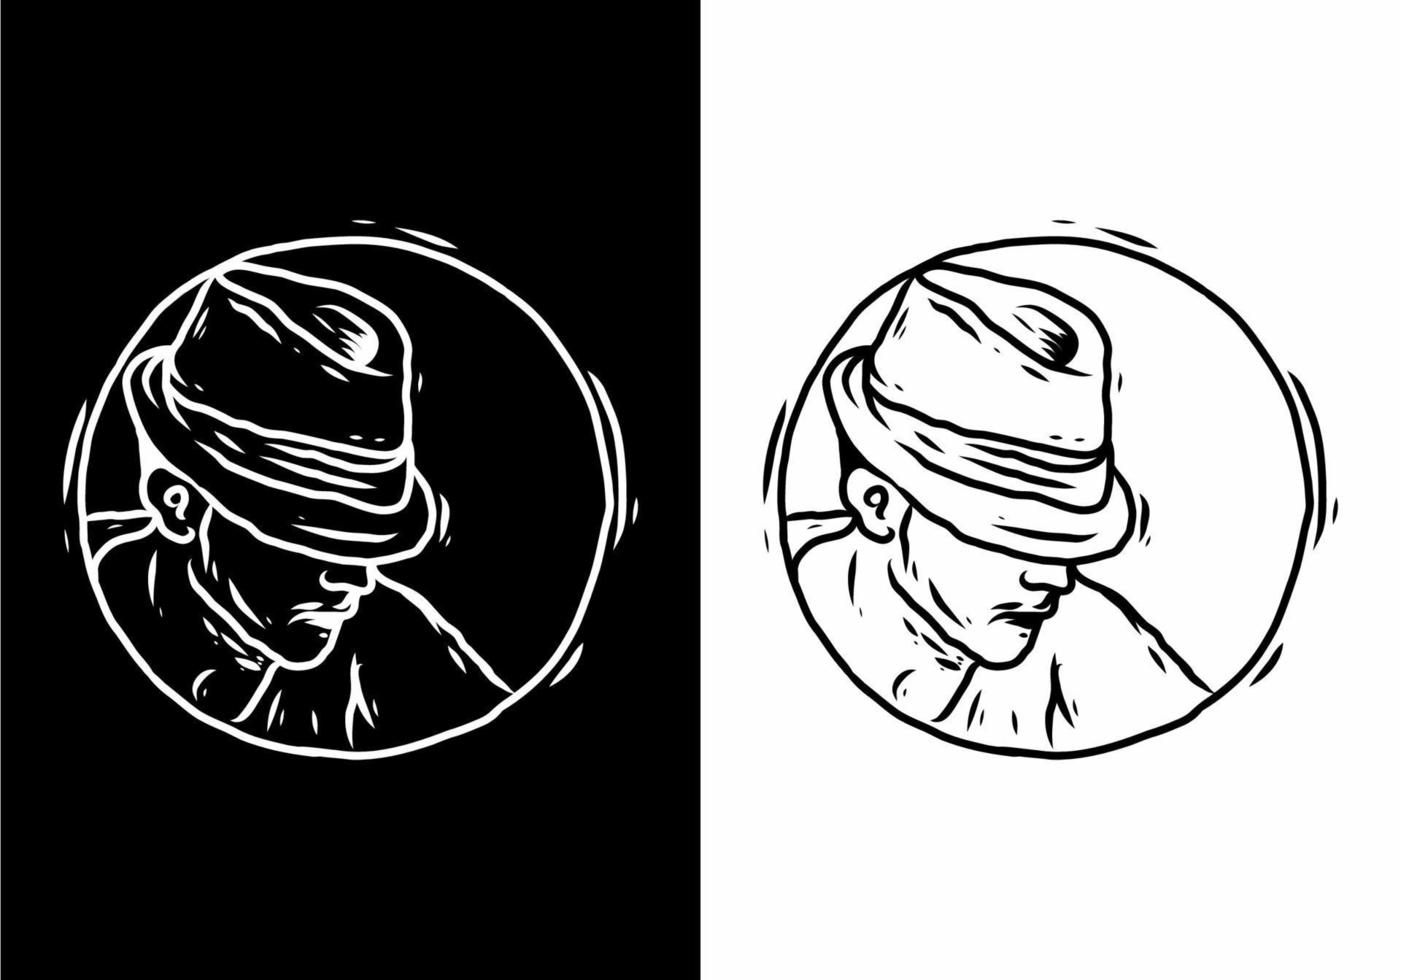 schwarz-weiße Strichzeichnungen eines Mannes mit Hut vektor